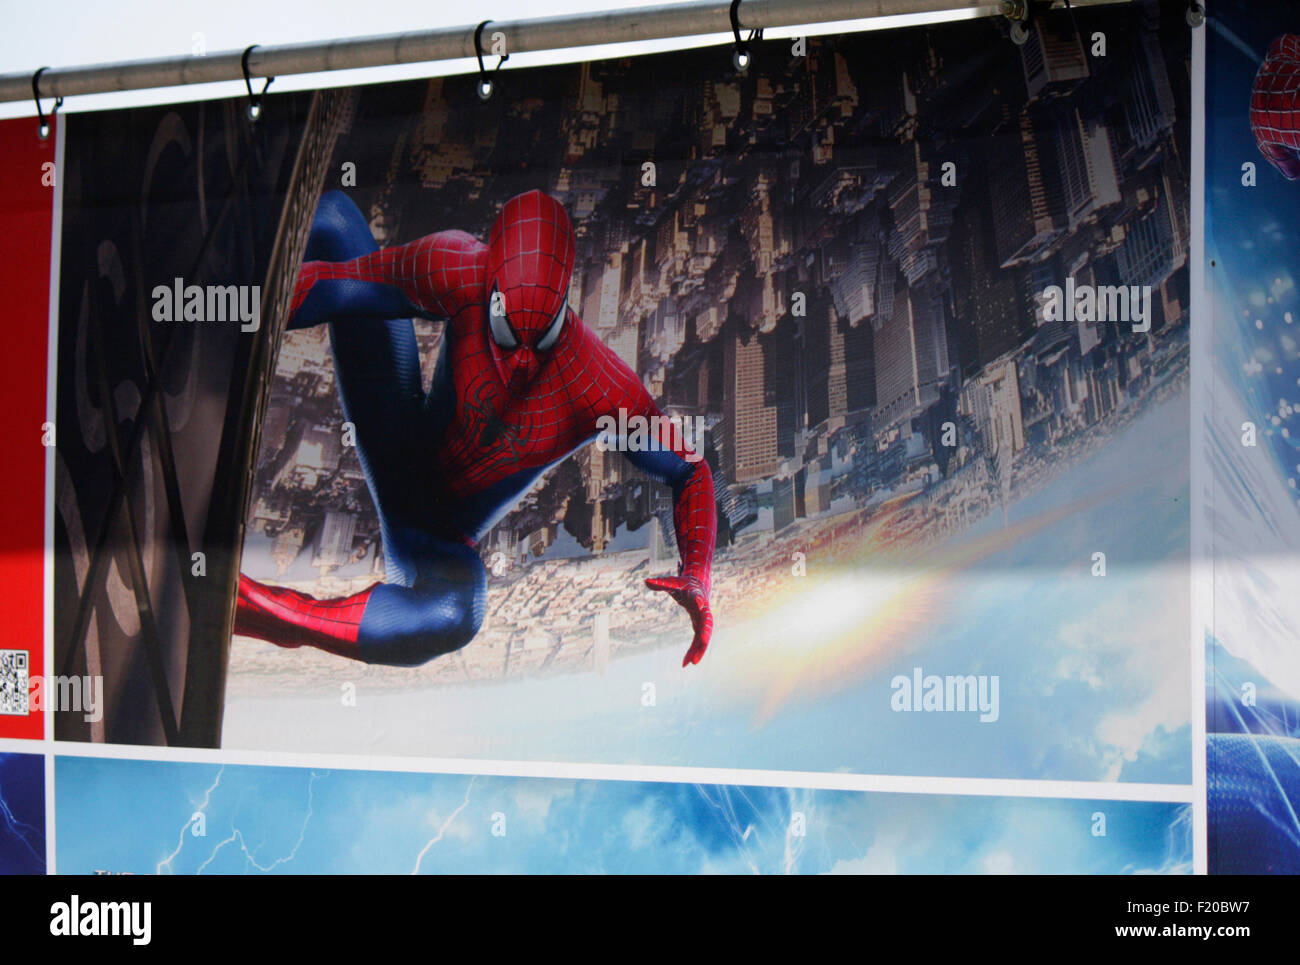 Werbeplakate Fuer Den Spielfilm "Spiderman", Berlin. Stockfoto